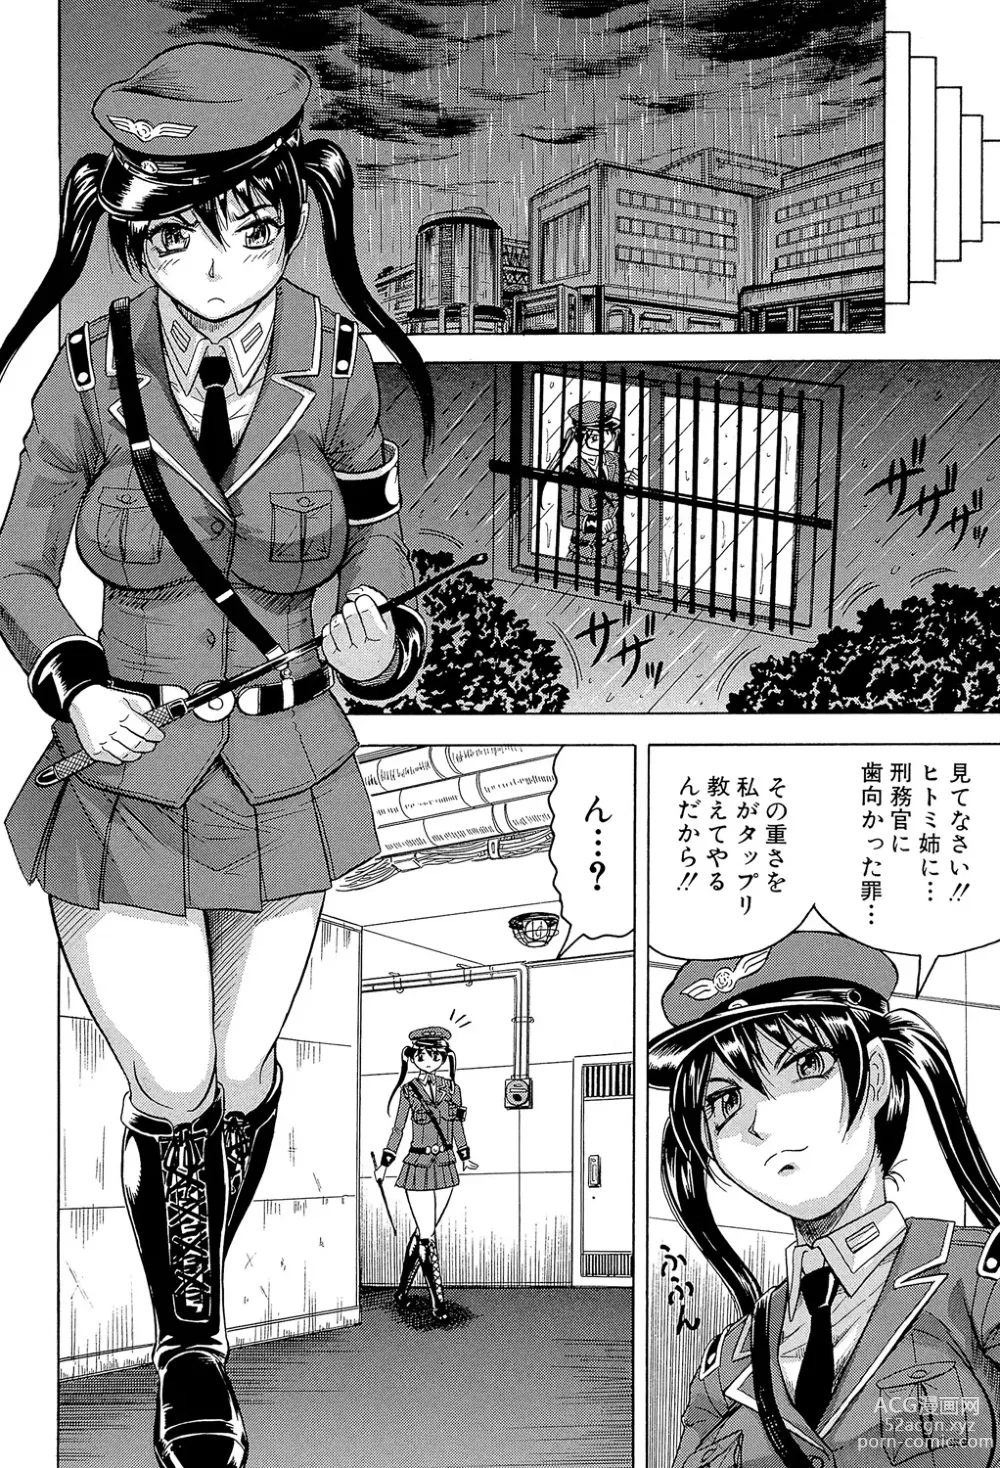 Page 12 of manga Kangokujima